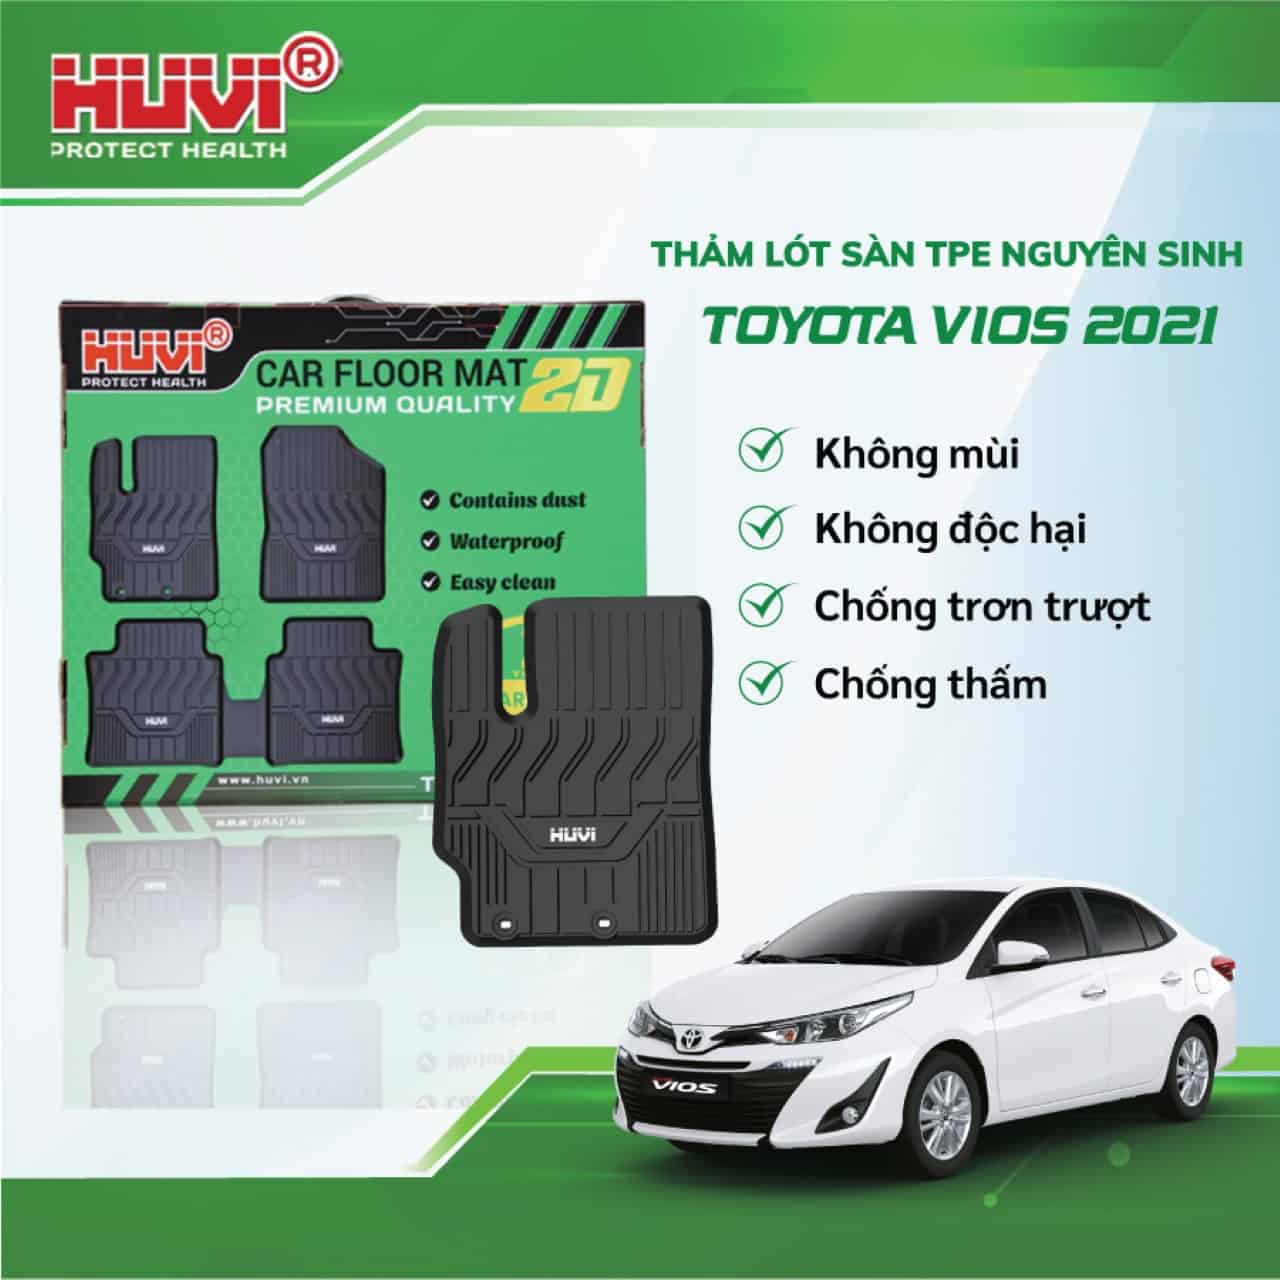 Thảm lót sàn ô tô HUVI cho xe Toyota Vios 2D năm 2018+